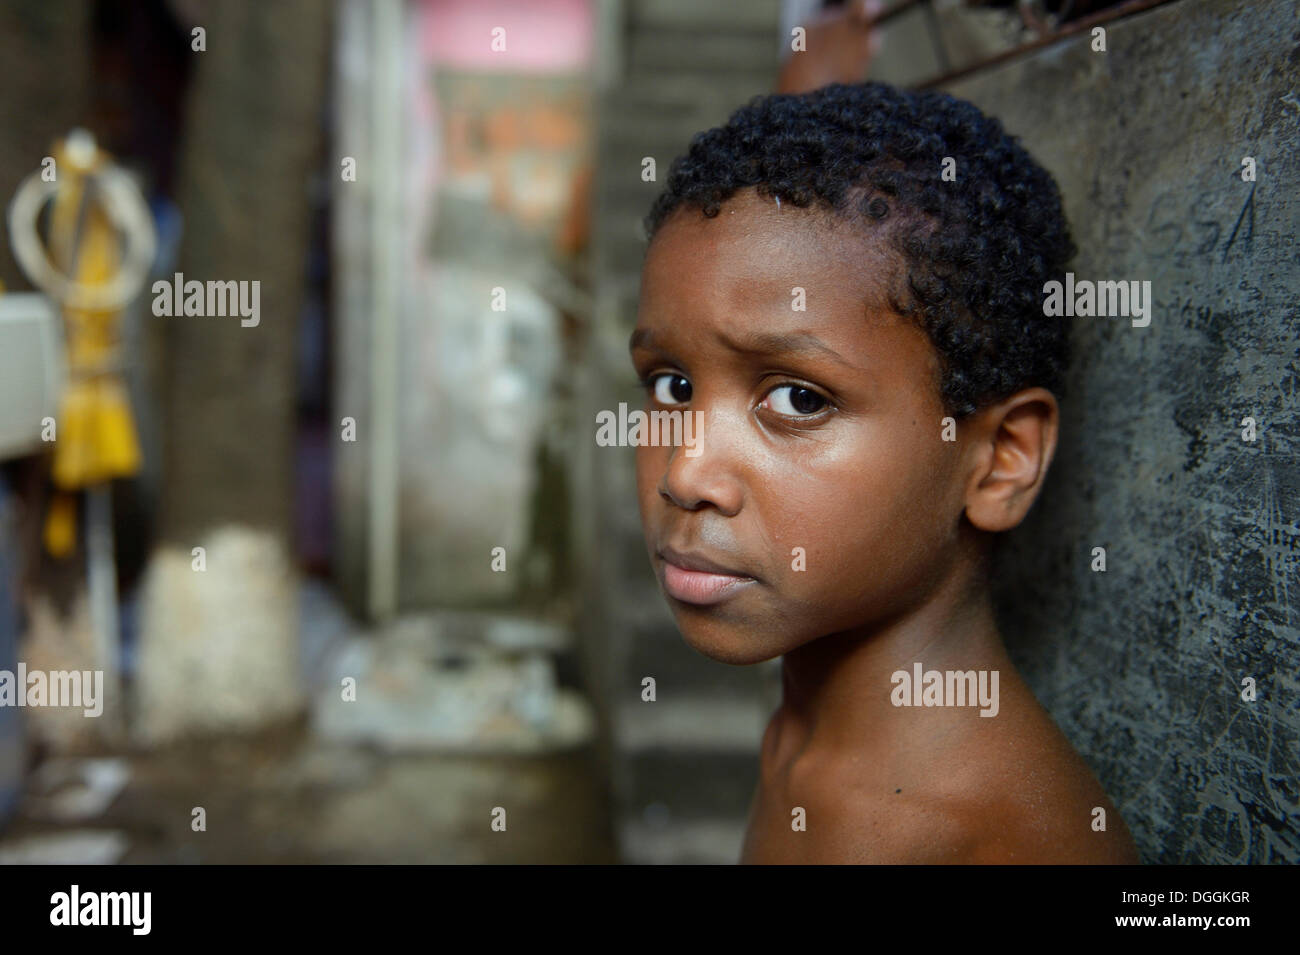 Boy with a suspicious expression in a slum or favela, Jacarezinho favela, Rio de Janeiro, Rio de Janeiro State, Brazil Stock Photo